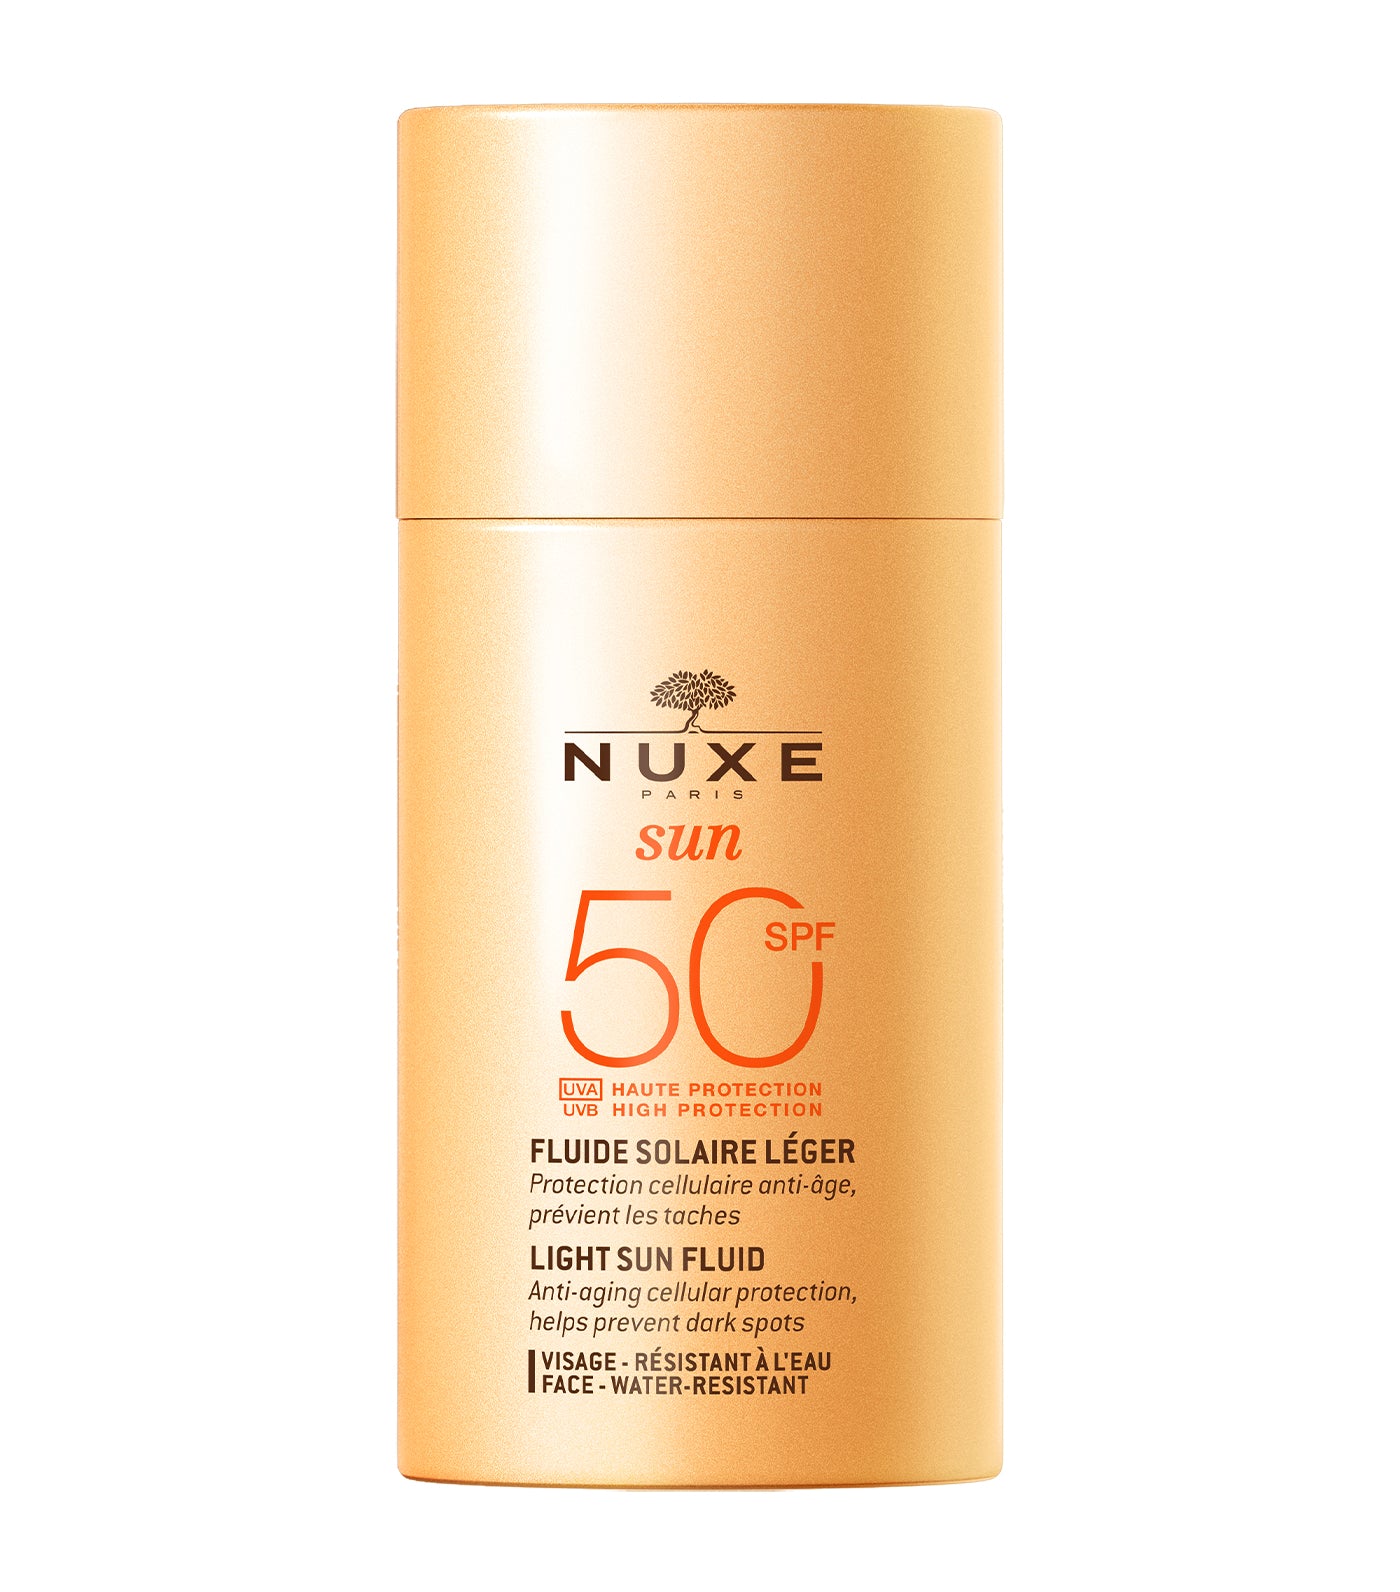 Nuxe Sun Light Sun Fluid High Protection SPF50 face